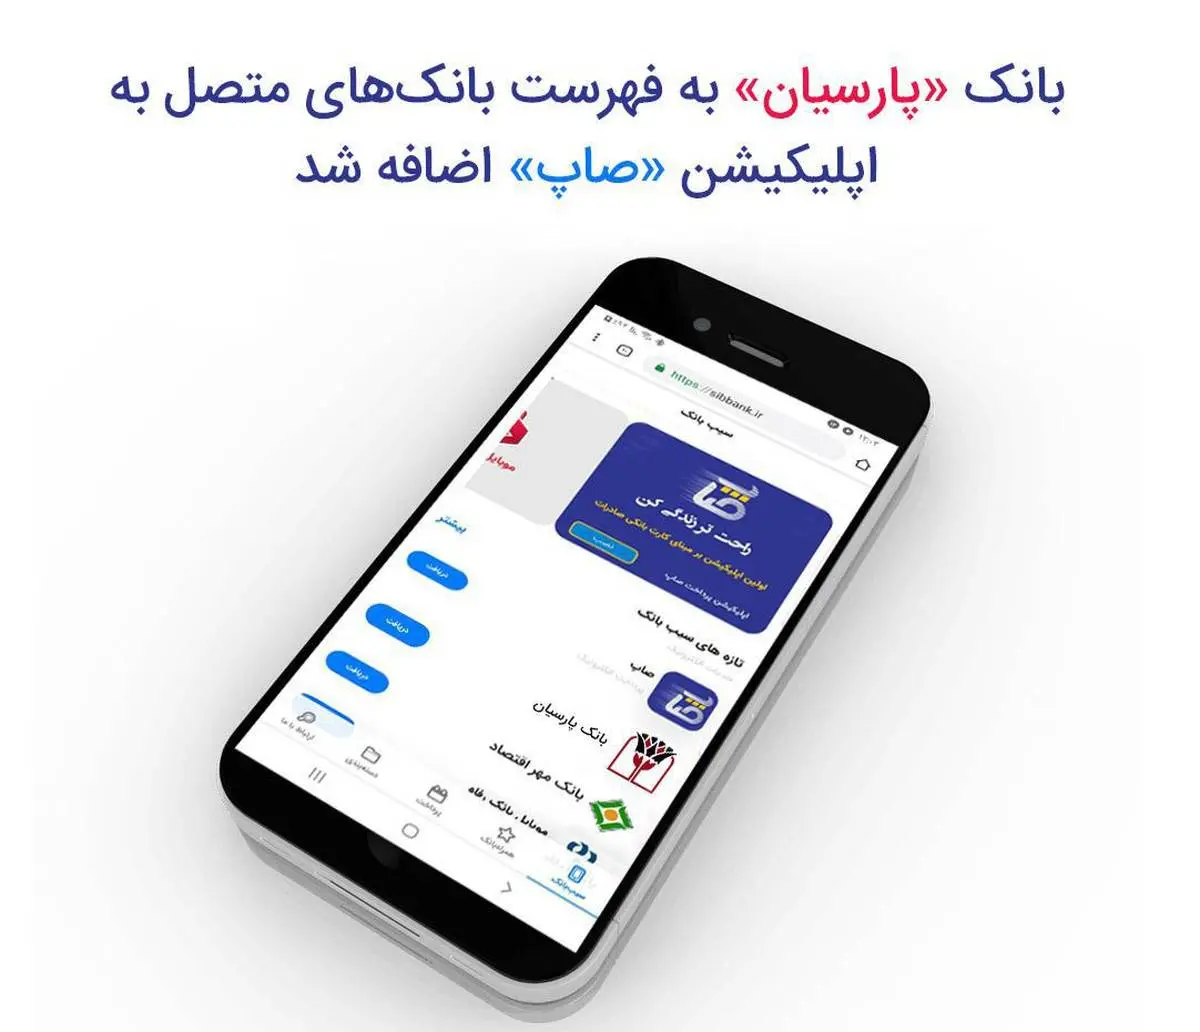 ​بانک «پارسیان» به فهرست بانک‌های متصل به اپلیکیشن «صاپ» اضافه شد

